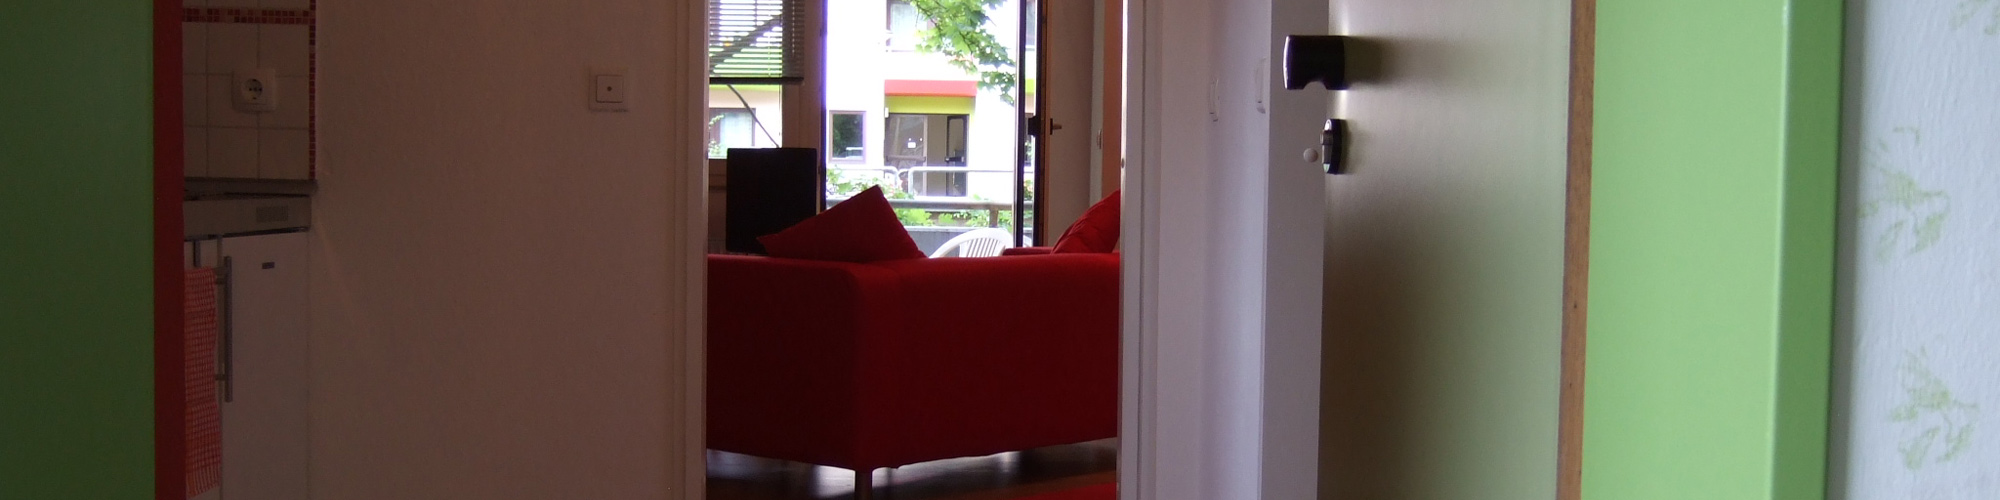 <h1>Apartment Red Lemon</h1>
Diese Wohnung hat Klasse und bietet einen optimalen Ausgangspunkt für Leben und Arbeiten in Trier.